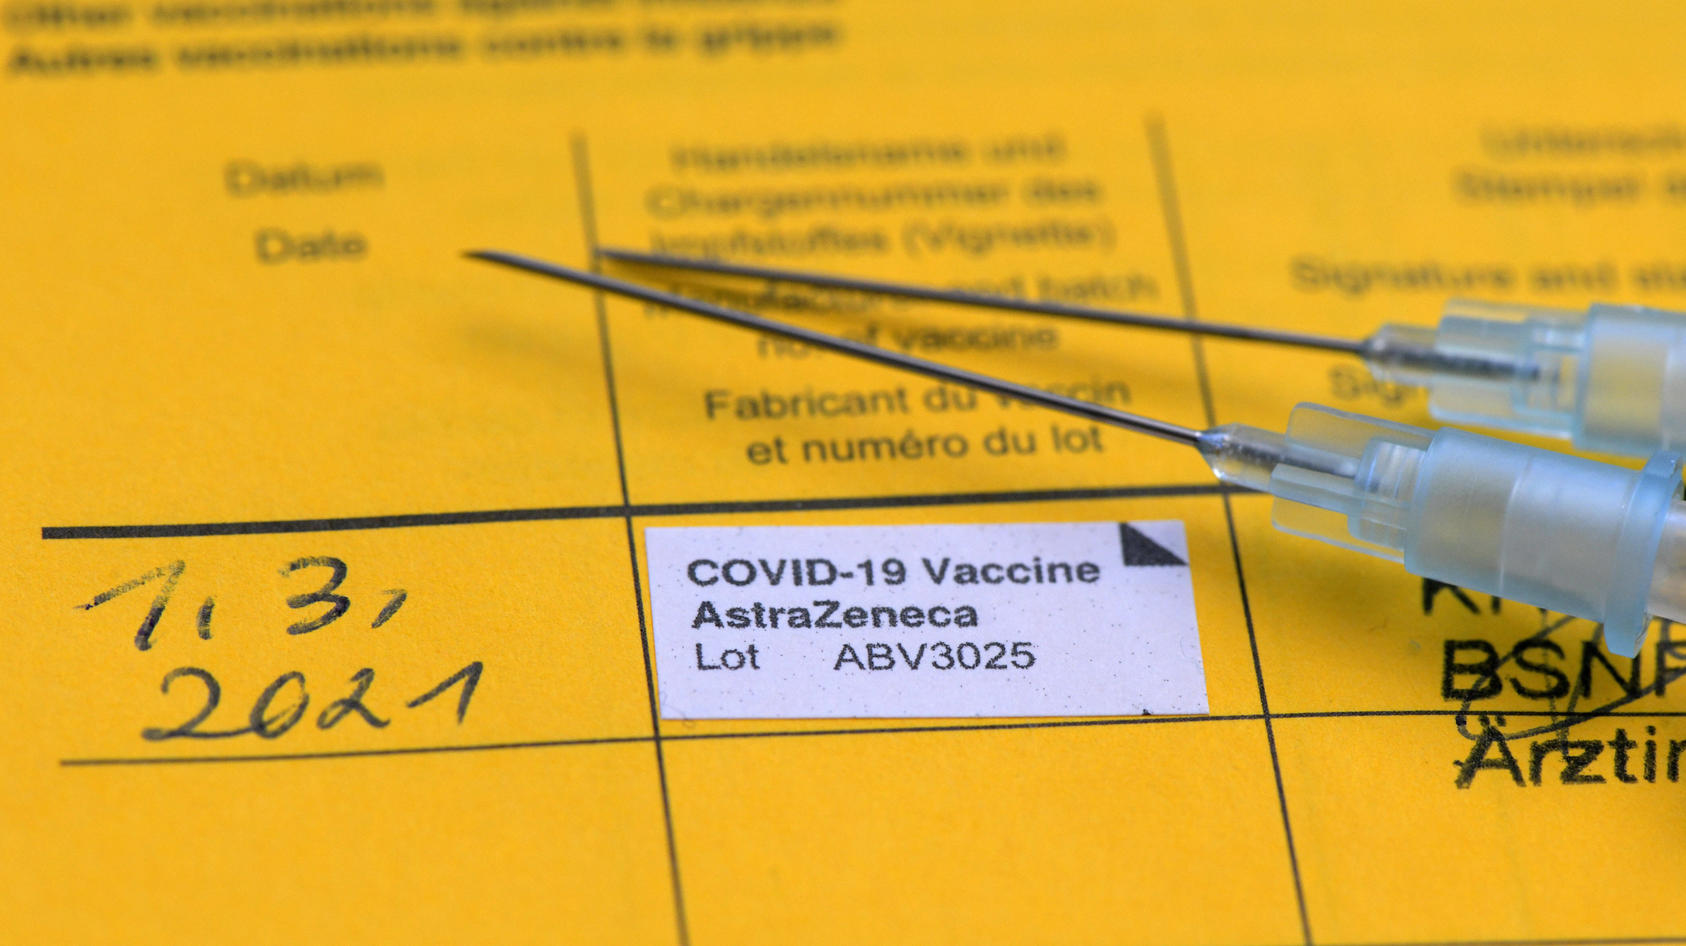  08.09.2020, Impfen, Impfpass liegt auf dem Tisch mit zwei Spritzen. Frischer Eintrag im Impfbüchlein für eine Covid-19-Impfung mit AstraZeneca Impfstoff. Impfzentrum Unterallgäu. 02.03.2021, Covid19-Impfung mit AstraZeneca im Impfpass 02.03.2021, Co